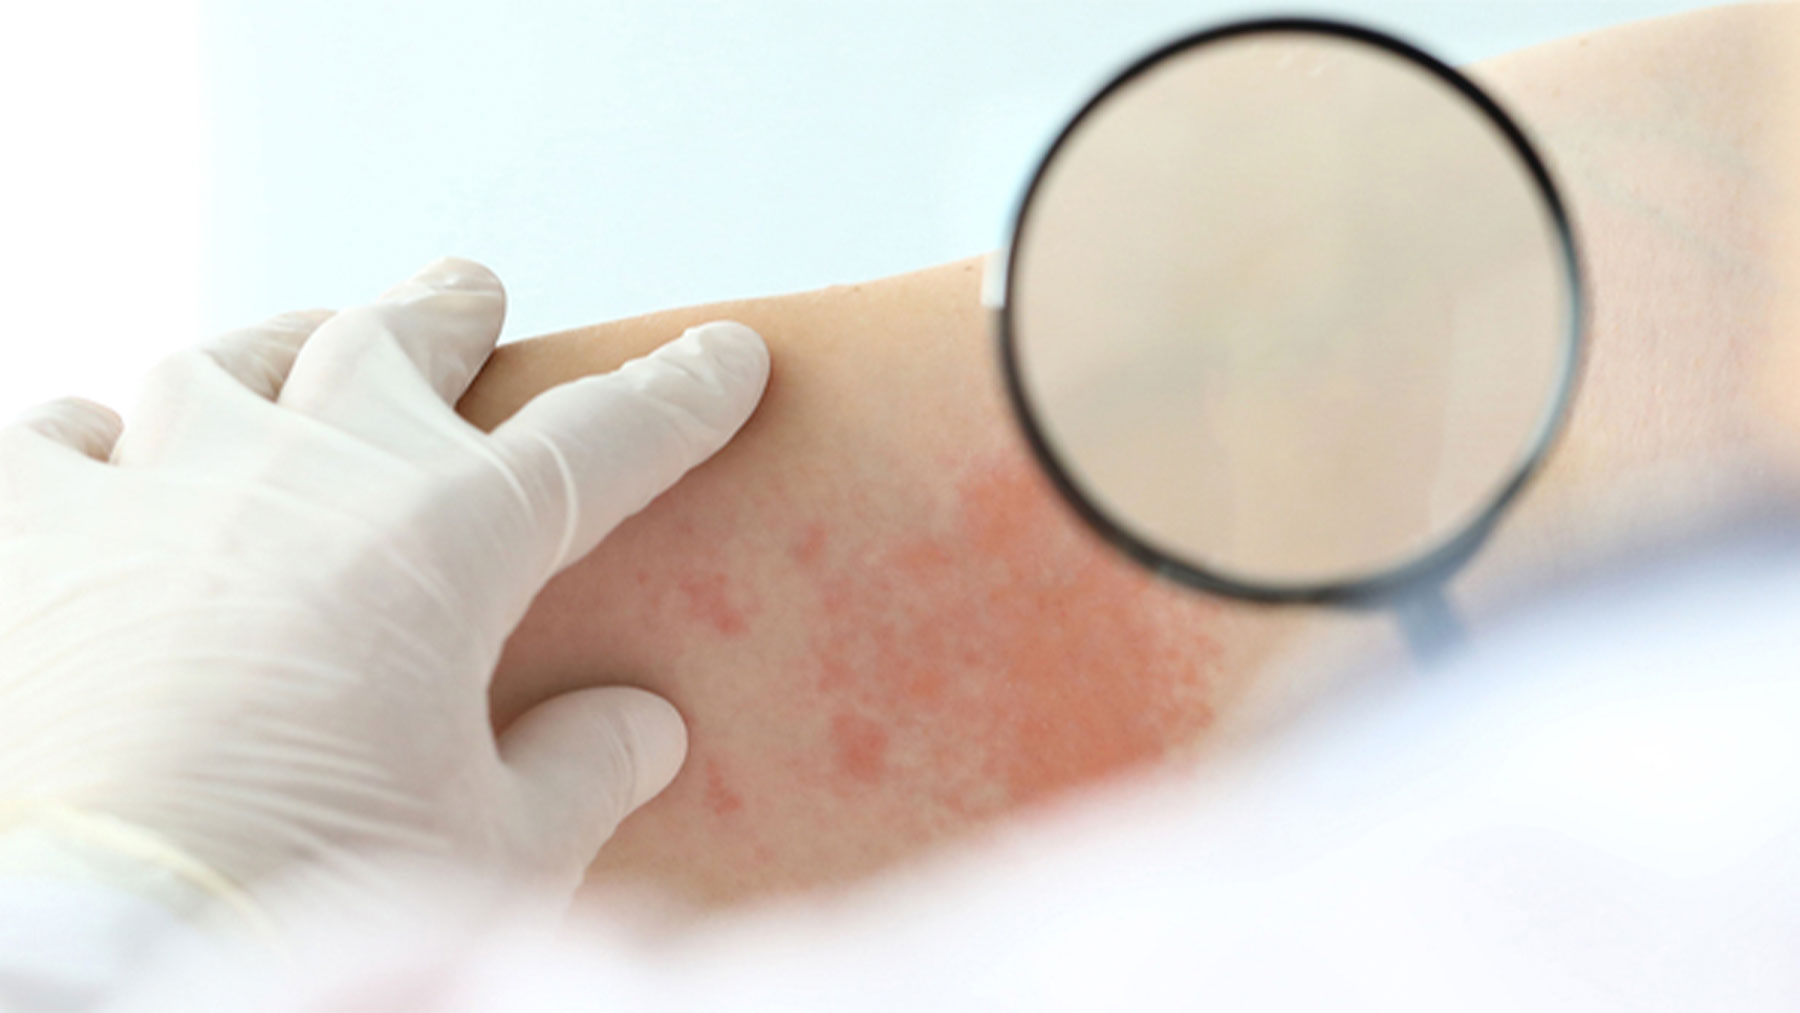 El inicio de la enfermedad cursa presentándose con lesiones cutáneas de color rojo-violáceo en la piel.